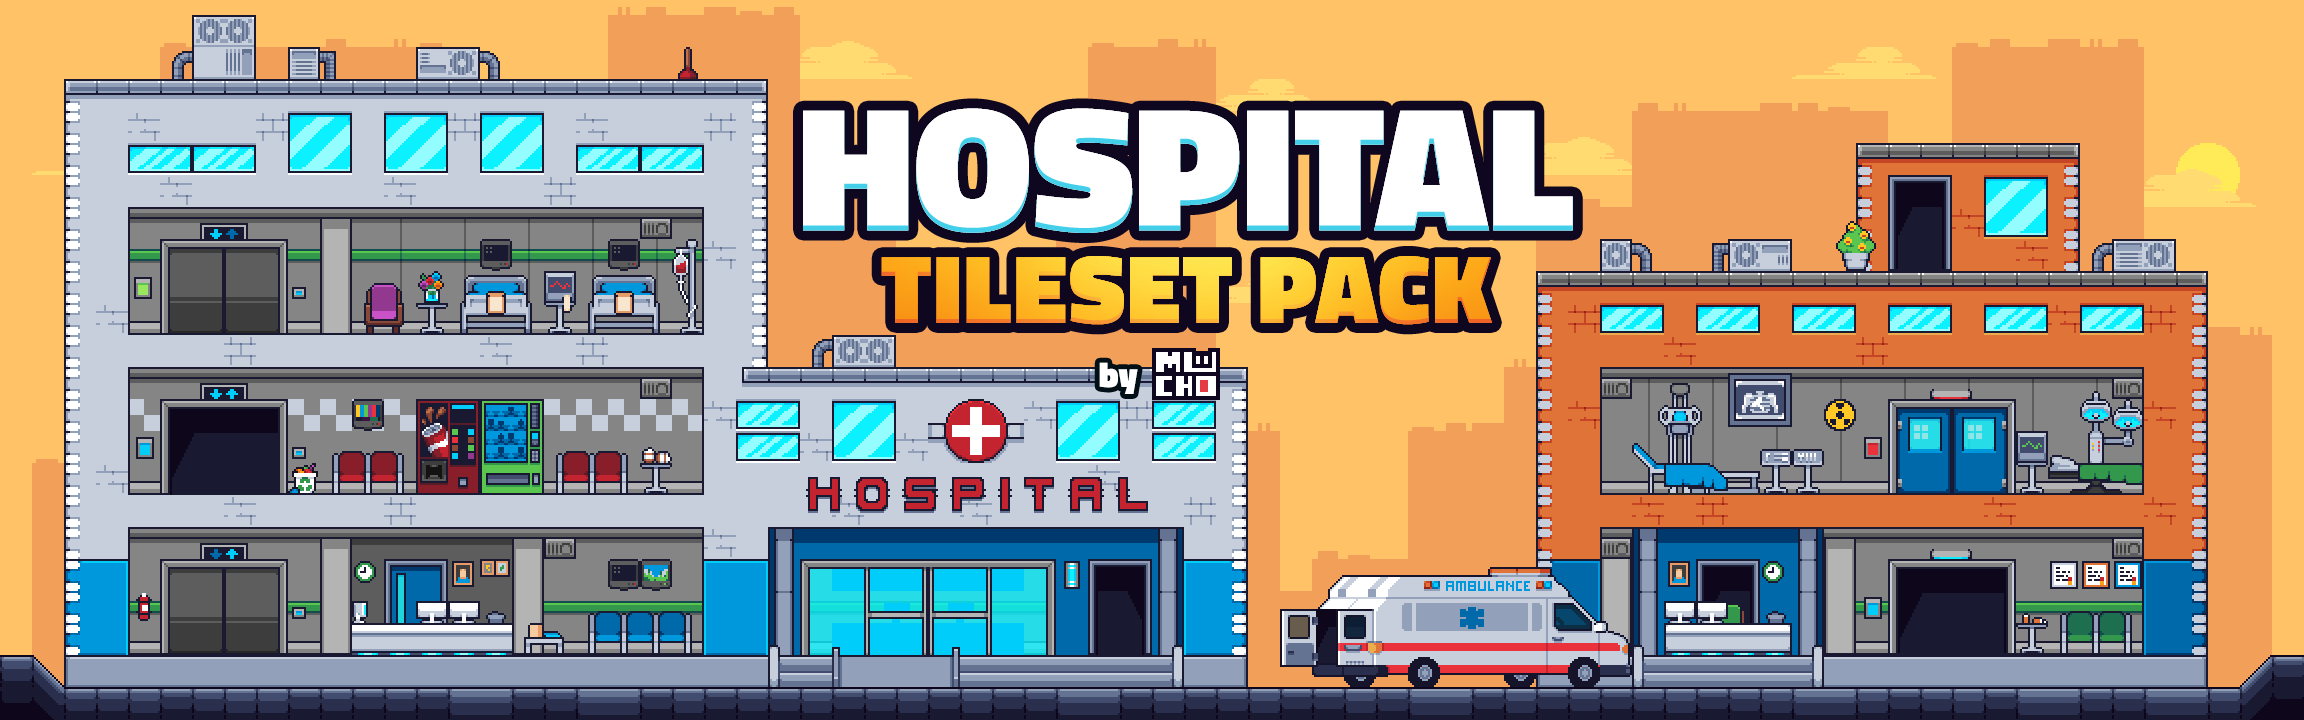 Hospital Tileset Pack